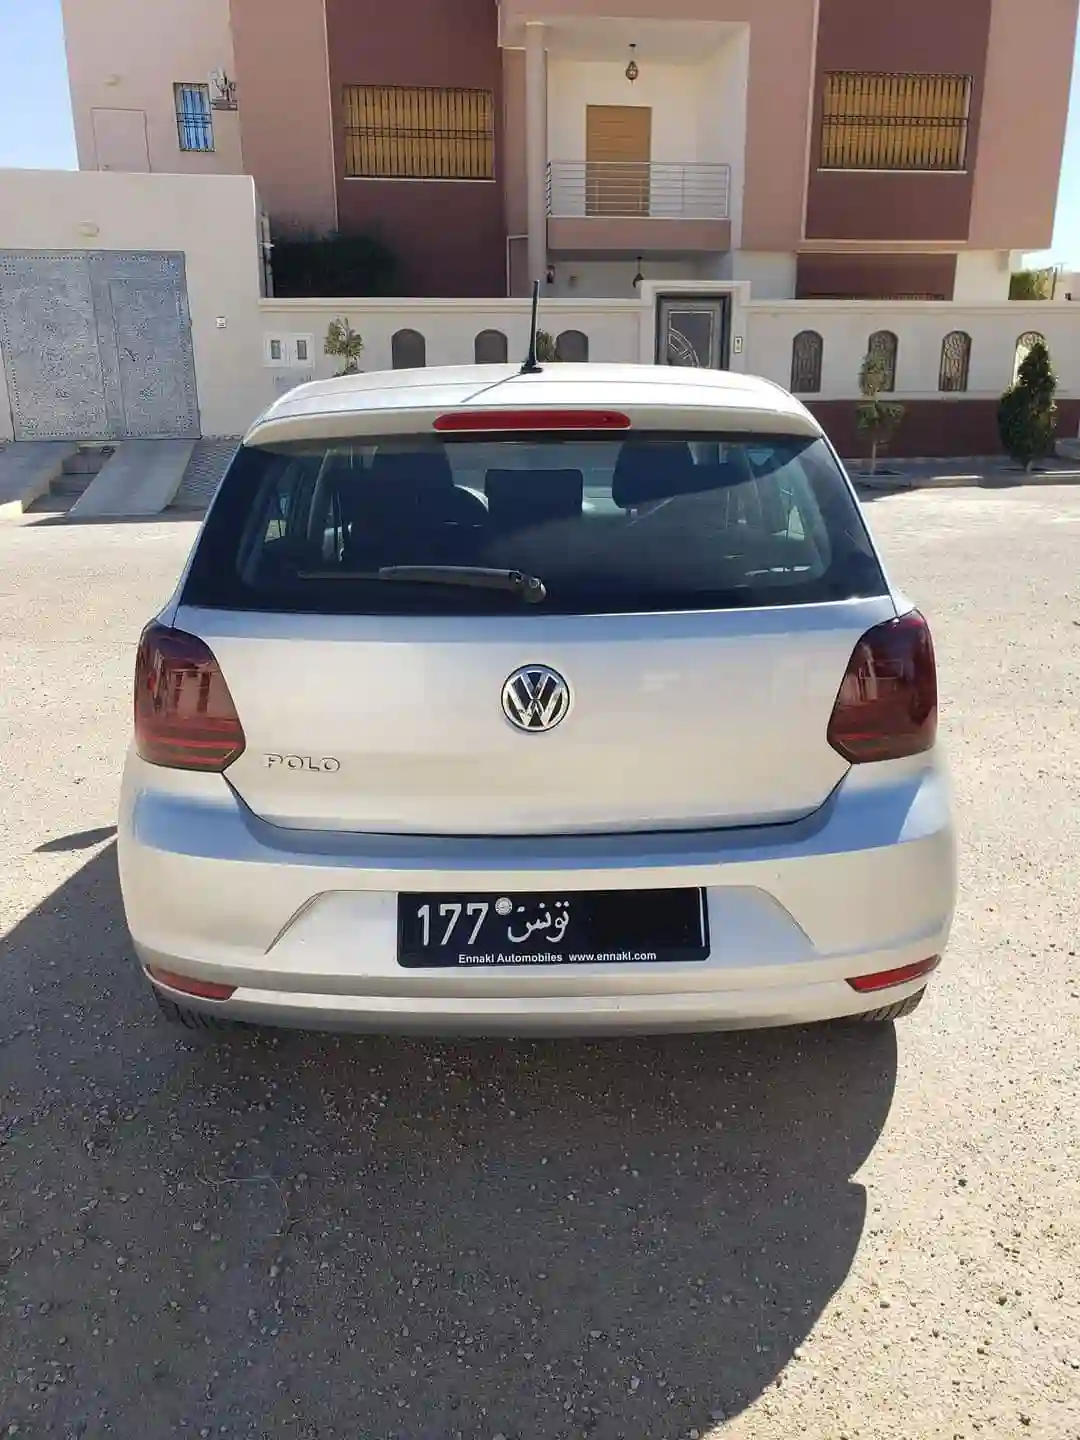 Volkswagen Polo 7 Plus fin 2014 à Sidi Bouzid0